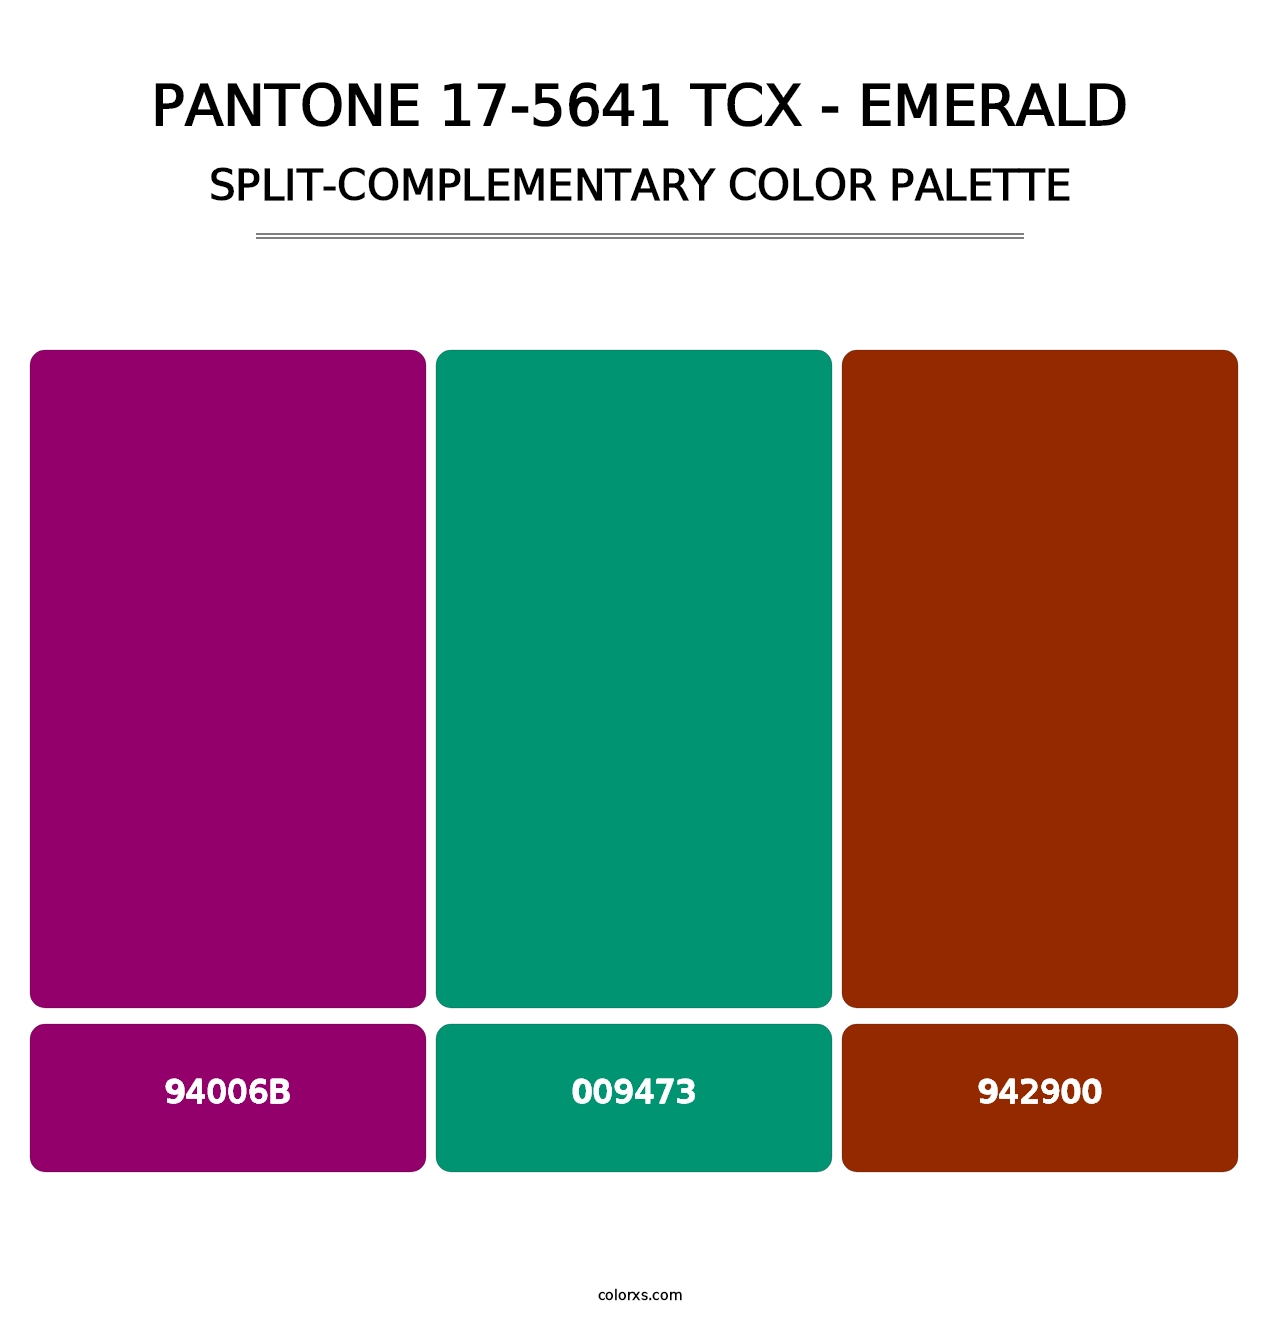 PANTONE 17-5641 TCX - Emerald - Split-Complementary Color Palette